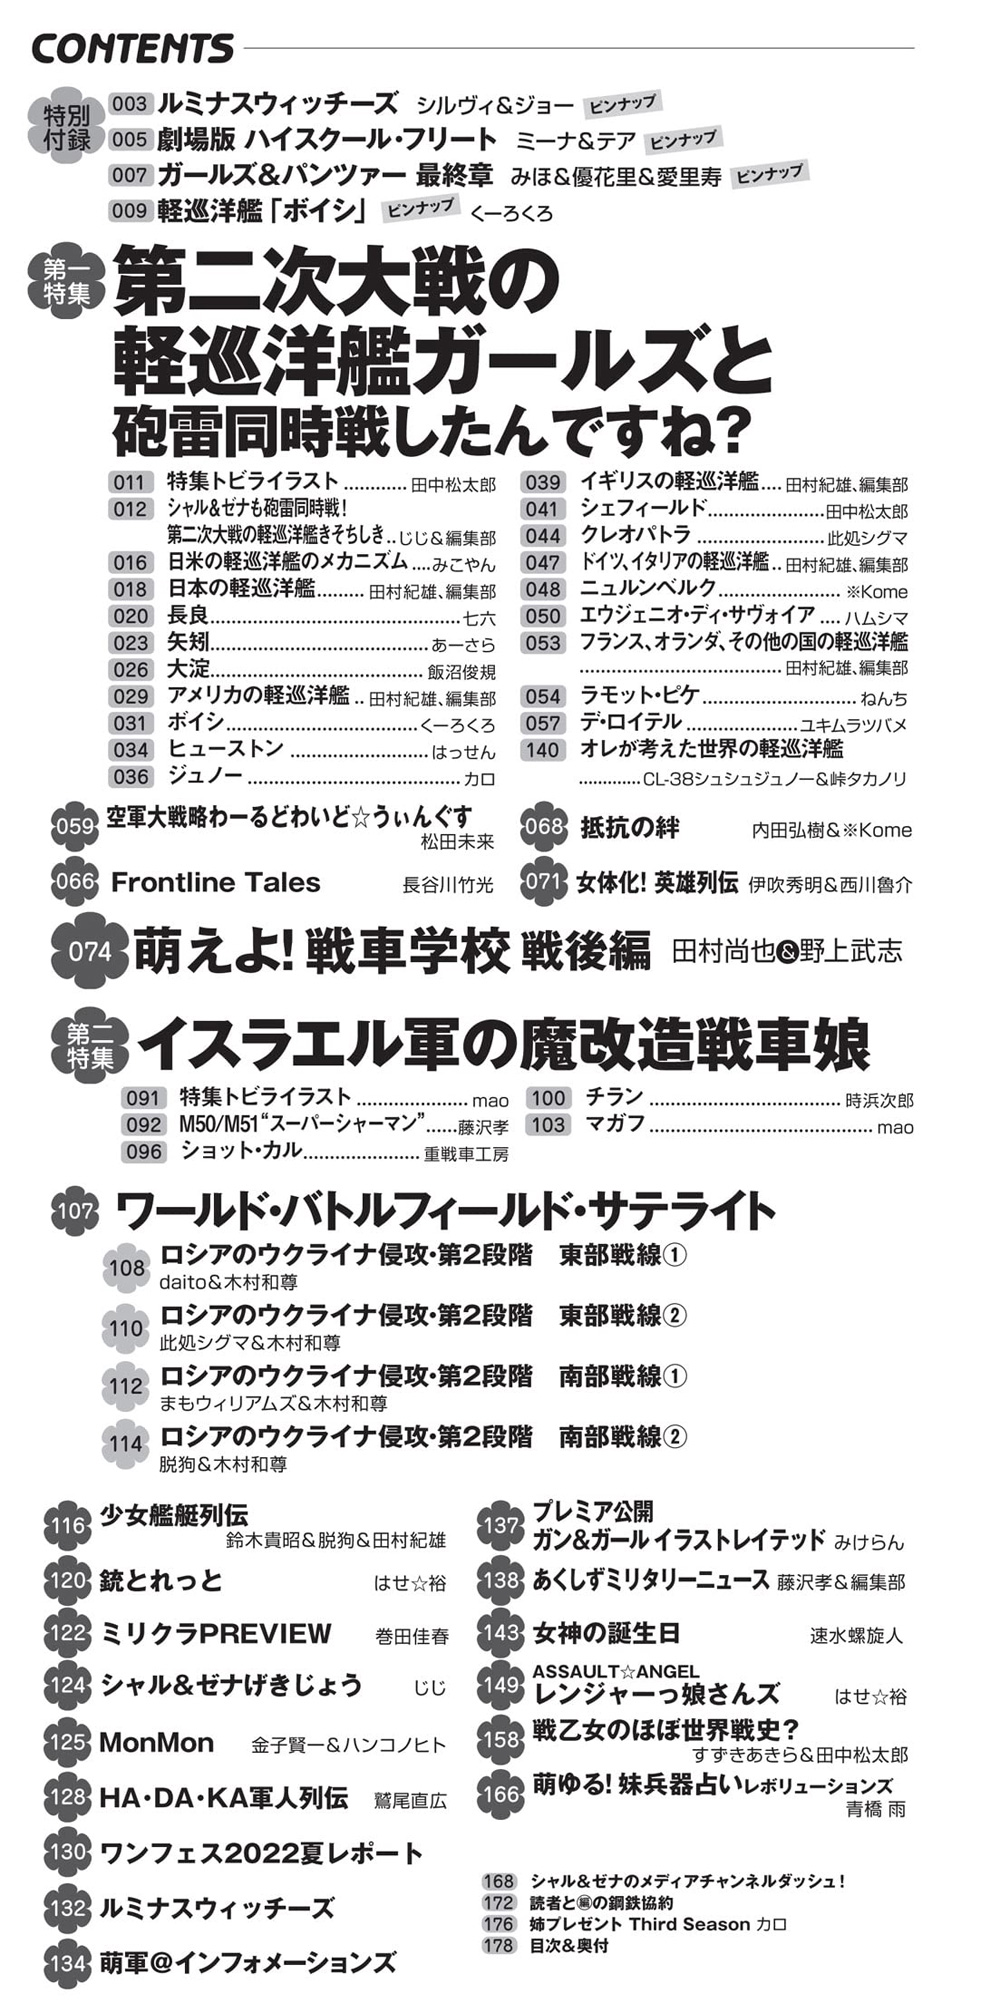 MC☆あくしず Vol.66 2022年 AUTUMN 雑誌 (イカロス出版 季刊 MCあくしず No.066) 商品画像_1